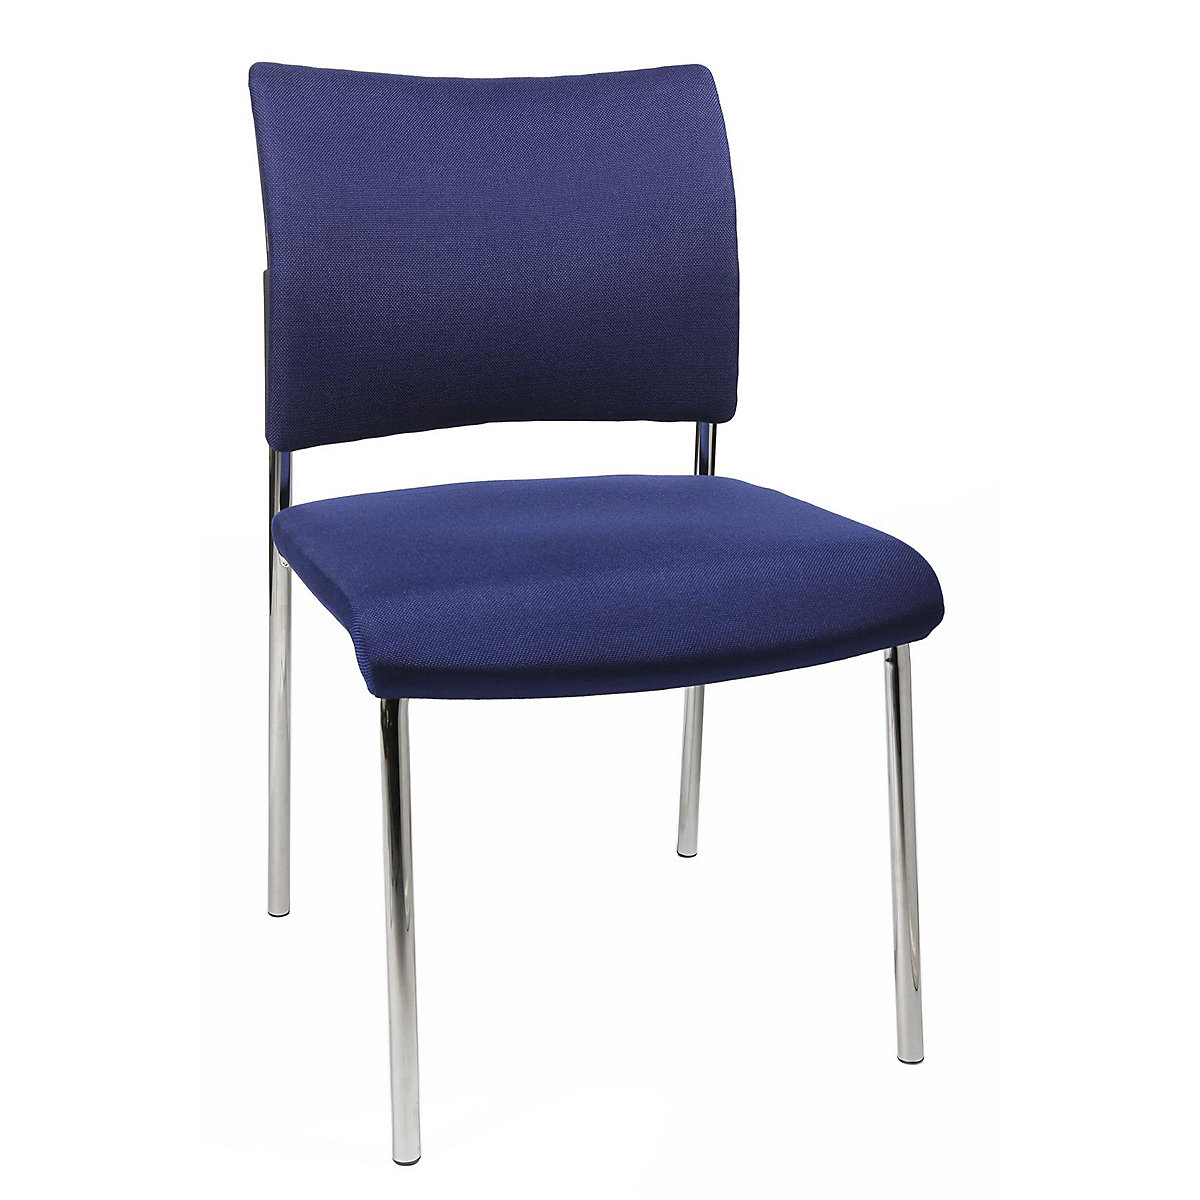 Bezoekersstoel, stapelbaar – Topstar, met 4 poten, rugleuning met textielbekleding, VE = 2 stuks, blauw-6